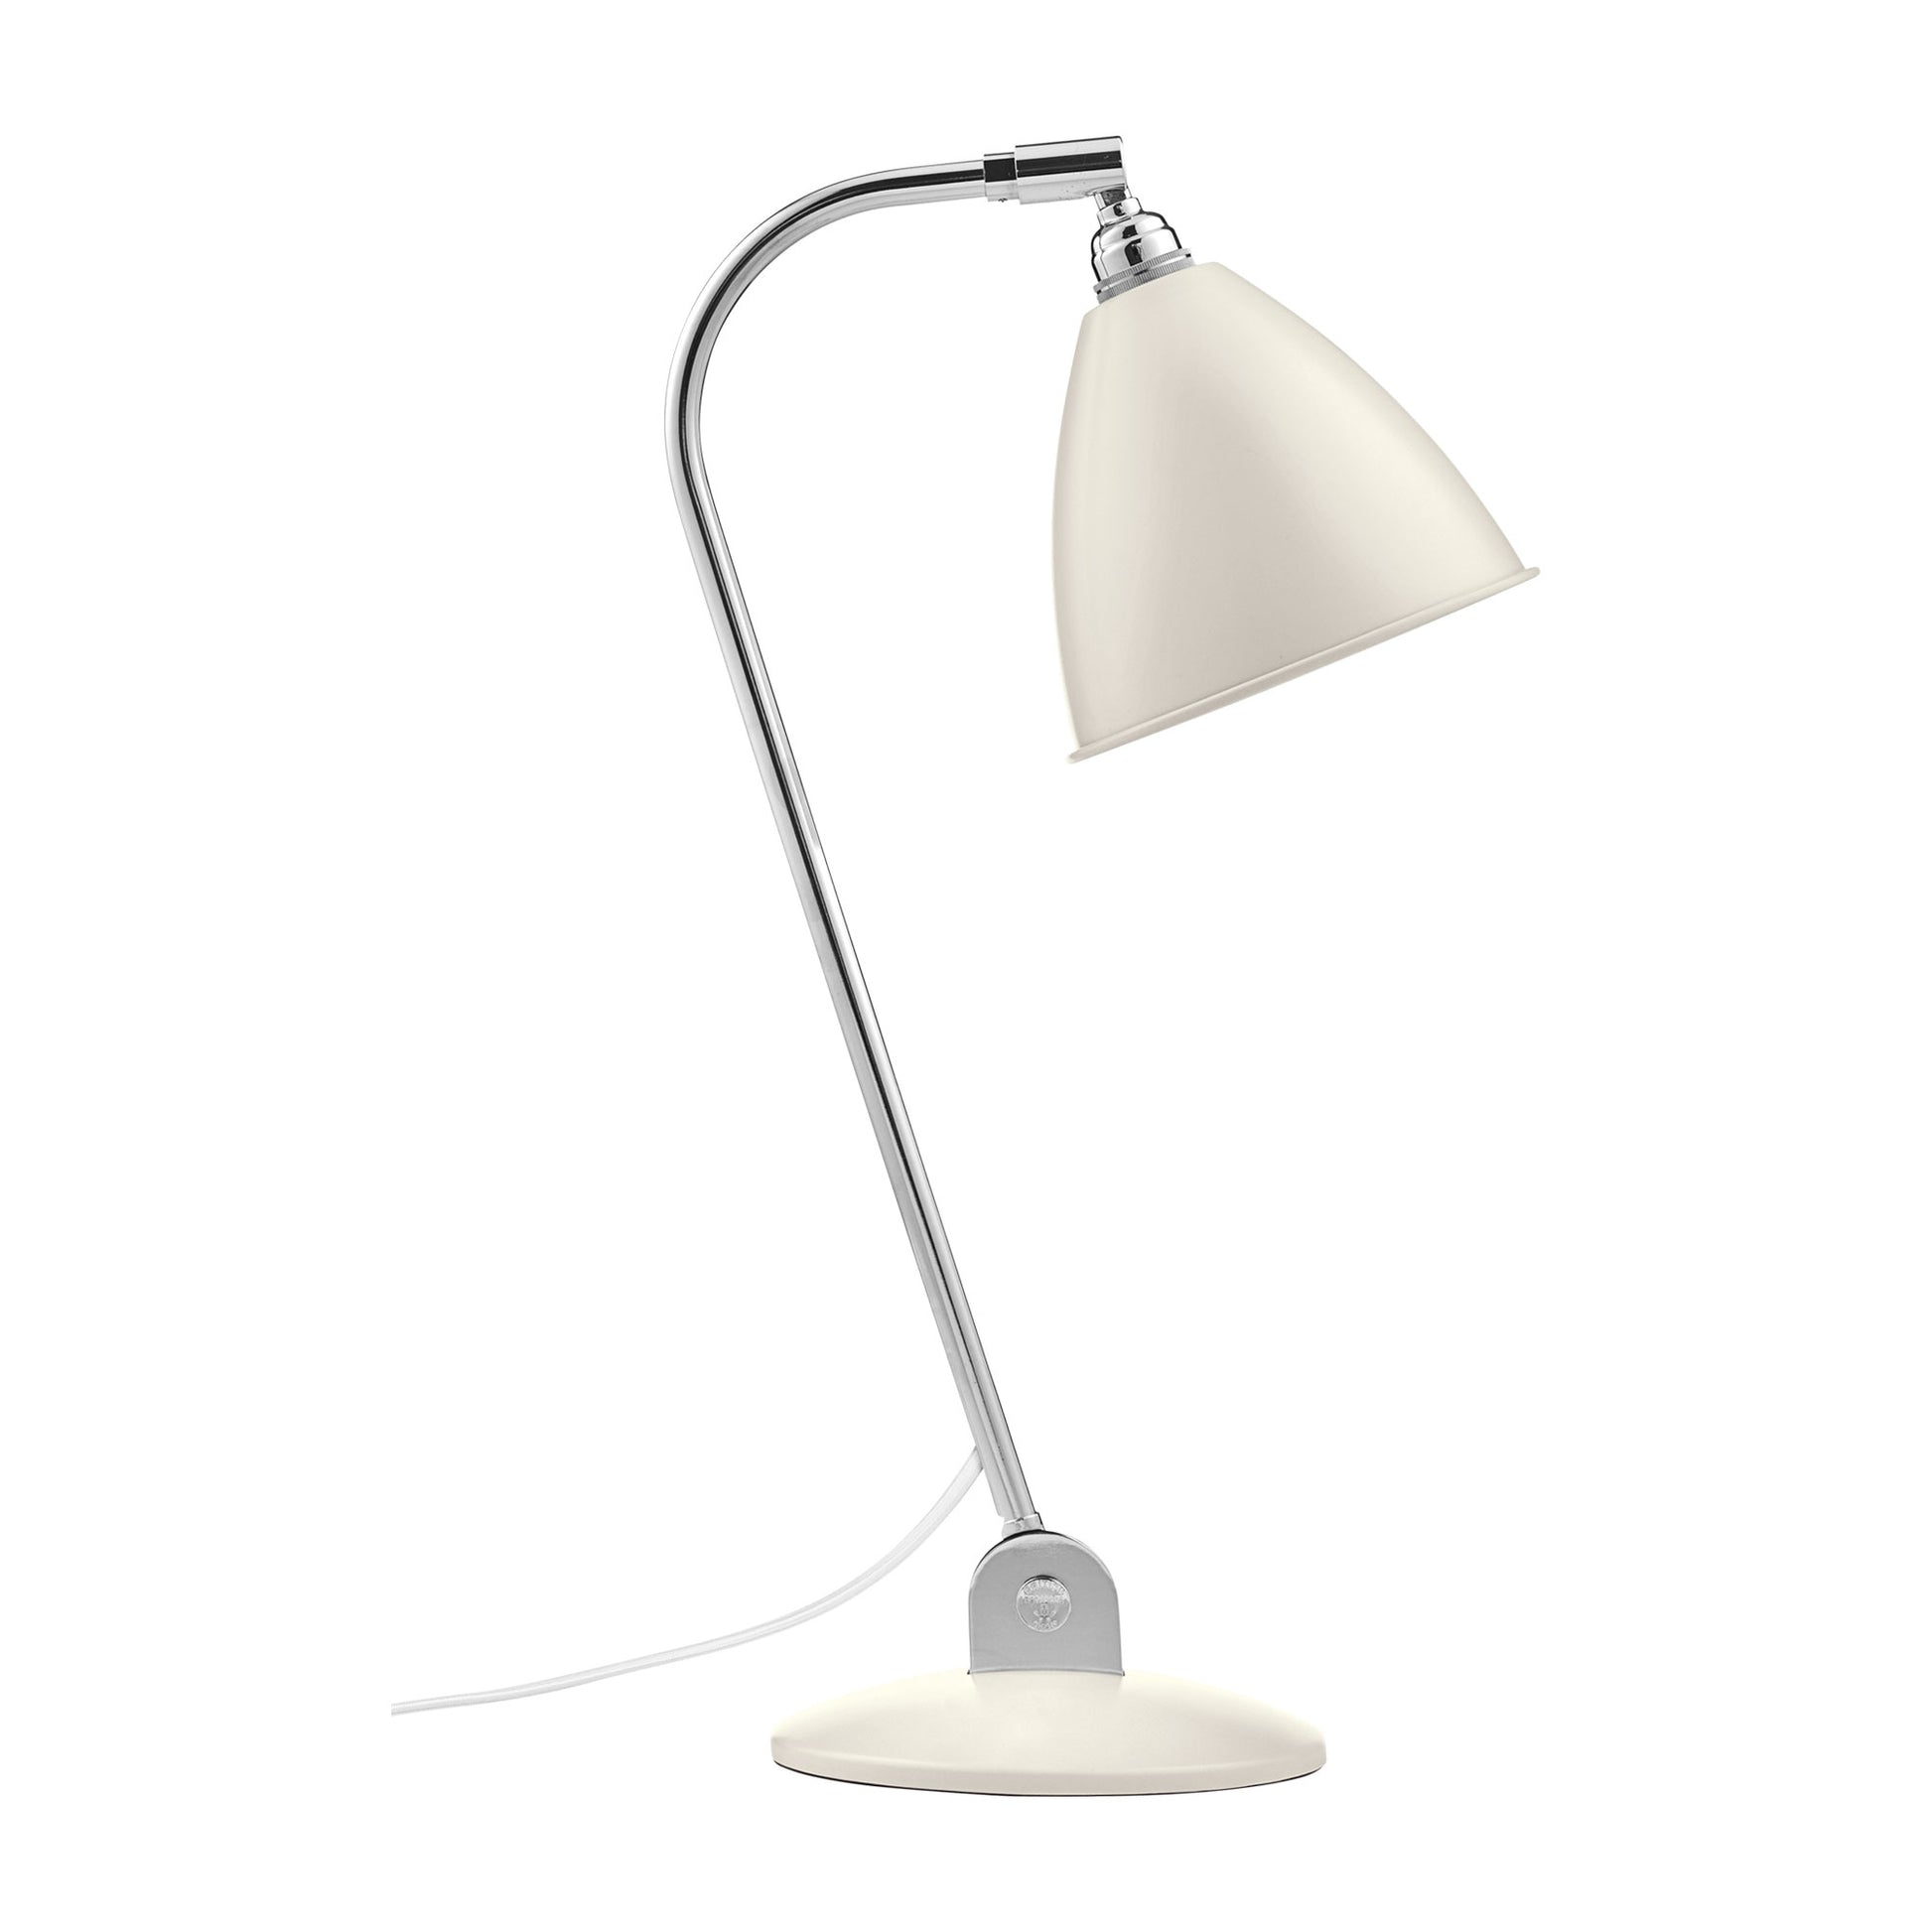 Bestlite BL2 Table Lamp by GUBI #Chrome / Matte white